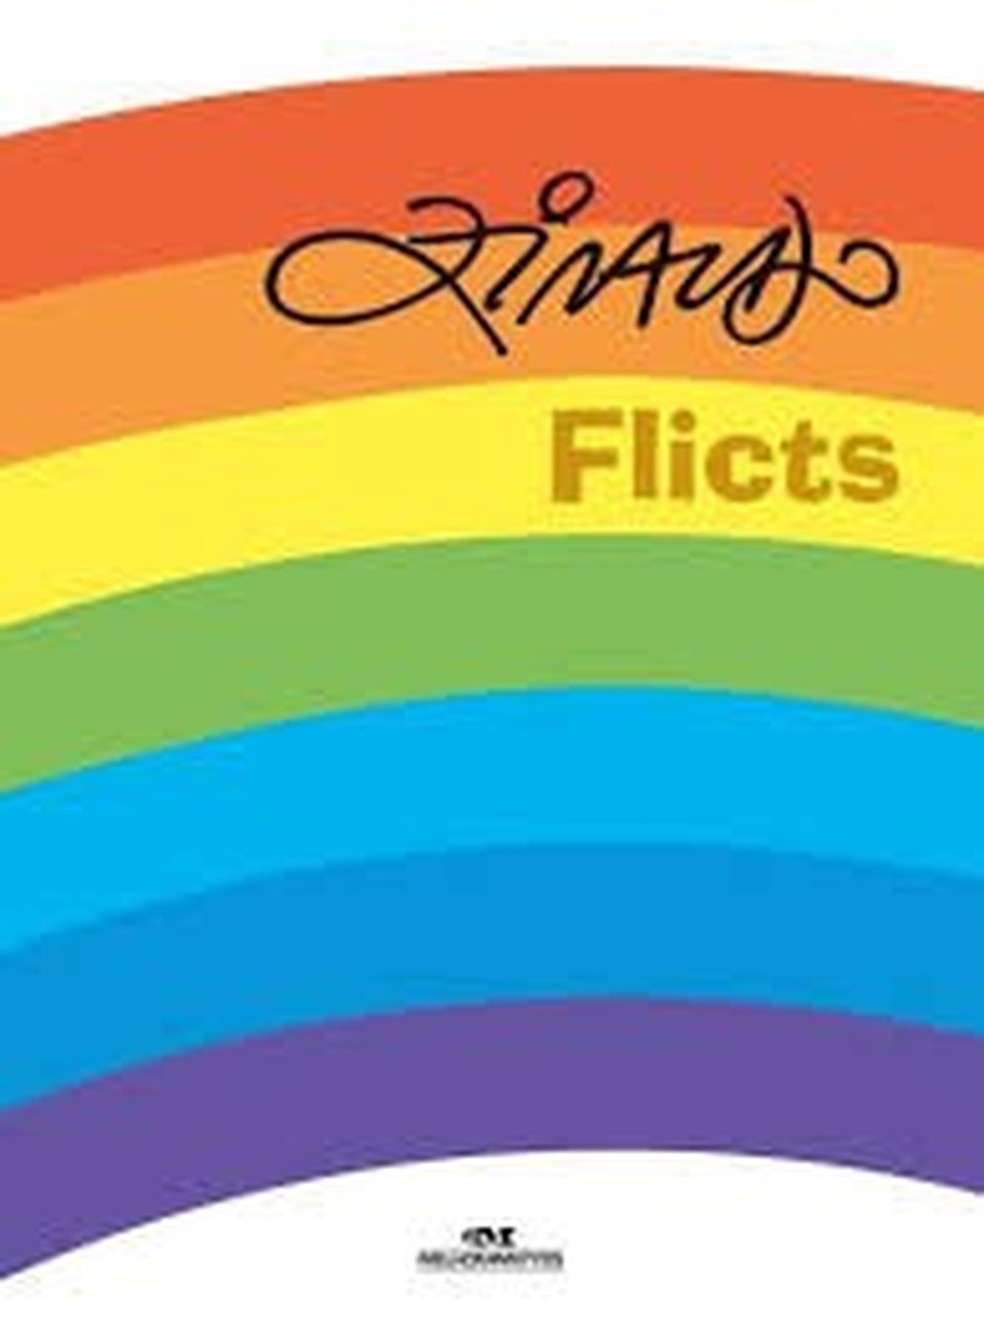 Capa do livro "Flicts", de Ziraldo — Foto: Divulgação